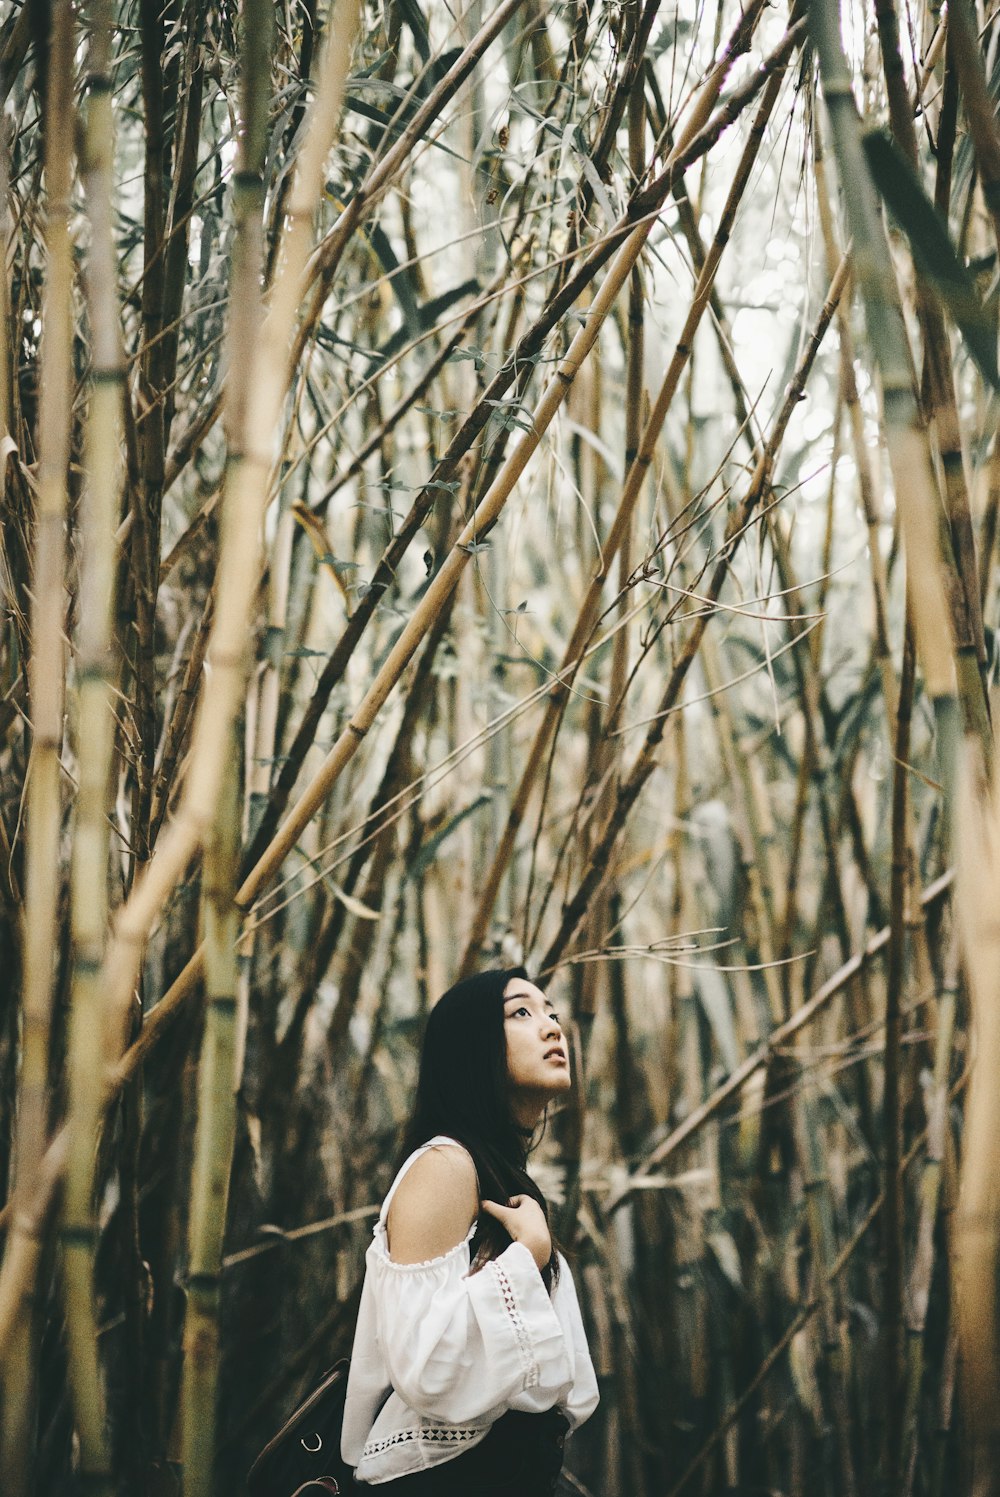 Frau in weißem Cold-Shoulder-Top steht im Bambuswald